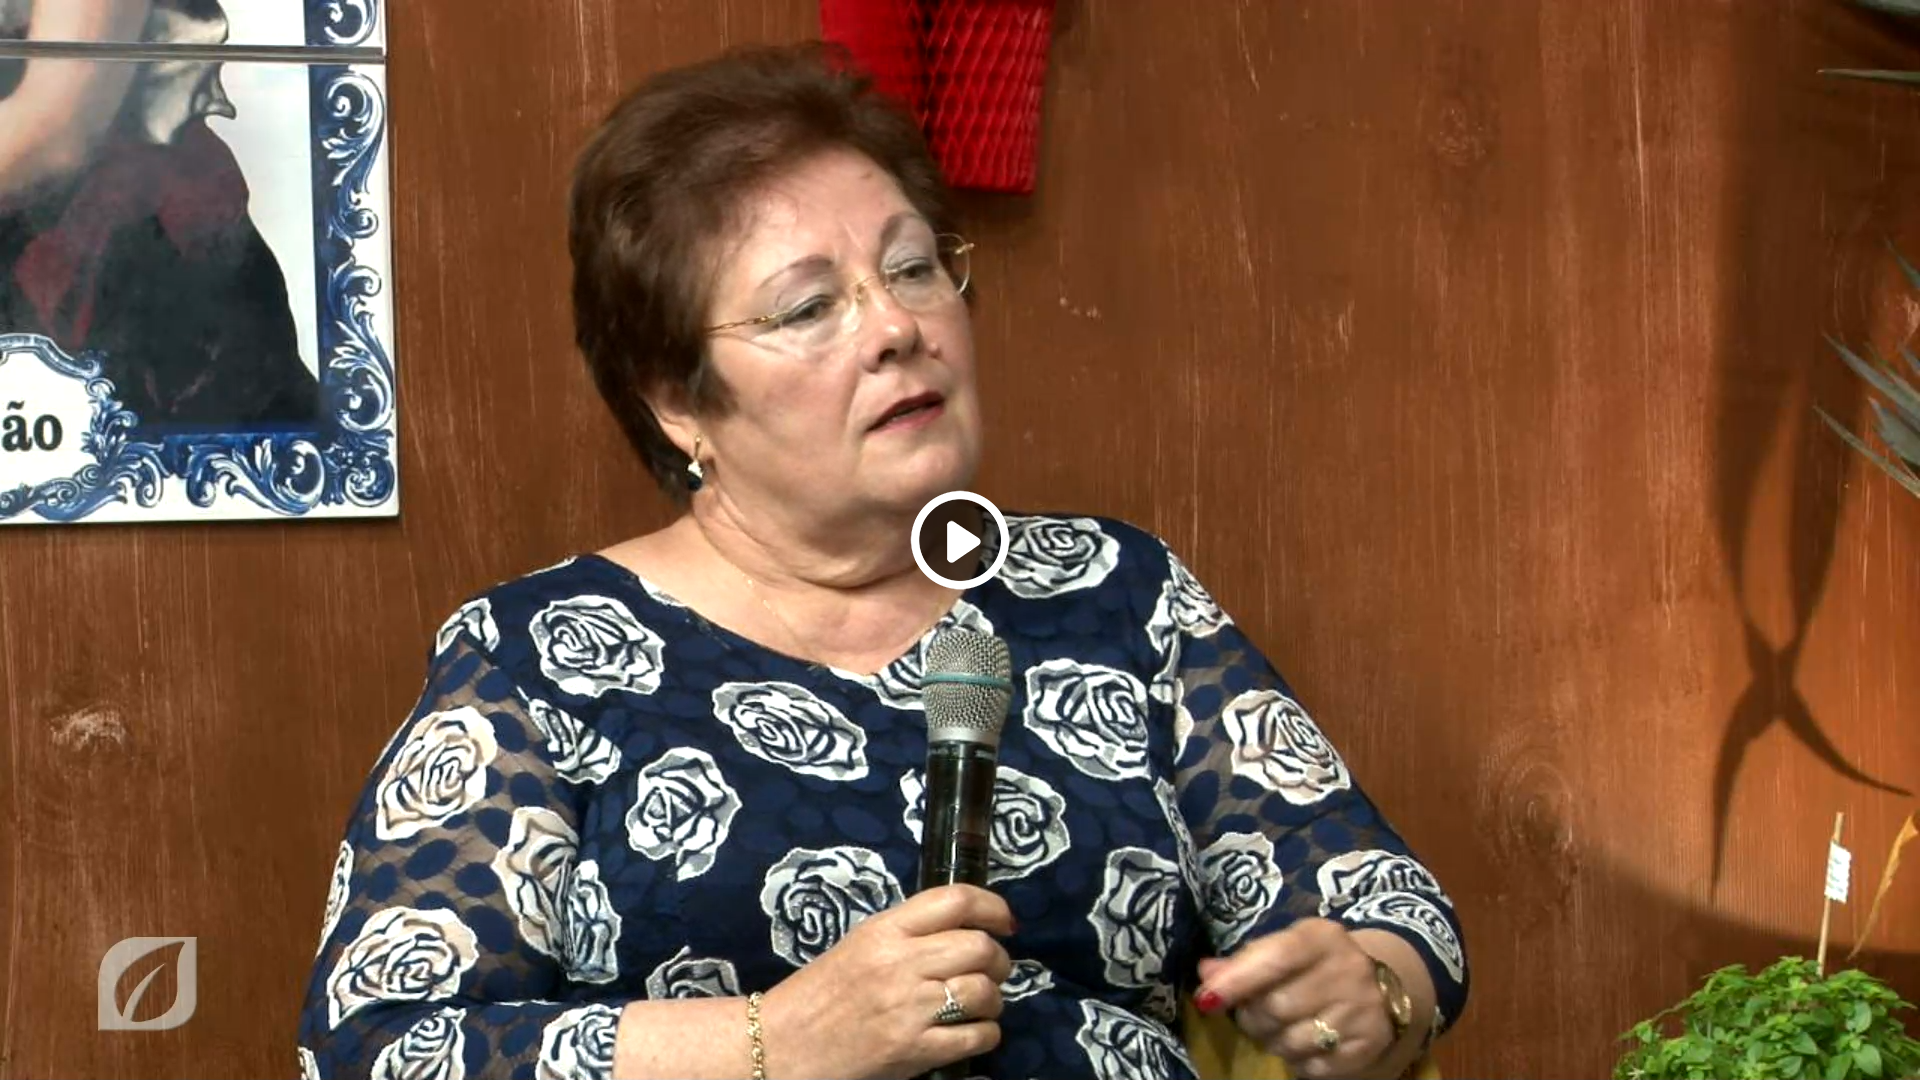  Sra. Arcília Nóbrega fala-nos das crenças populares - SÃO JOÃO EM CÂMARA DE LOBOS - Edição online